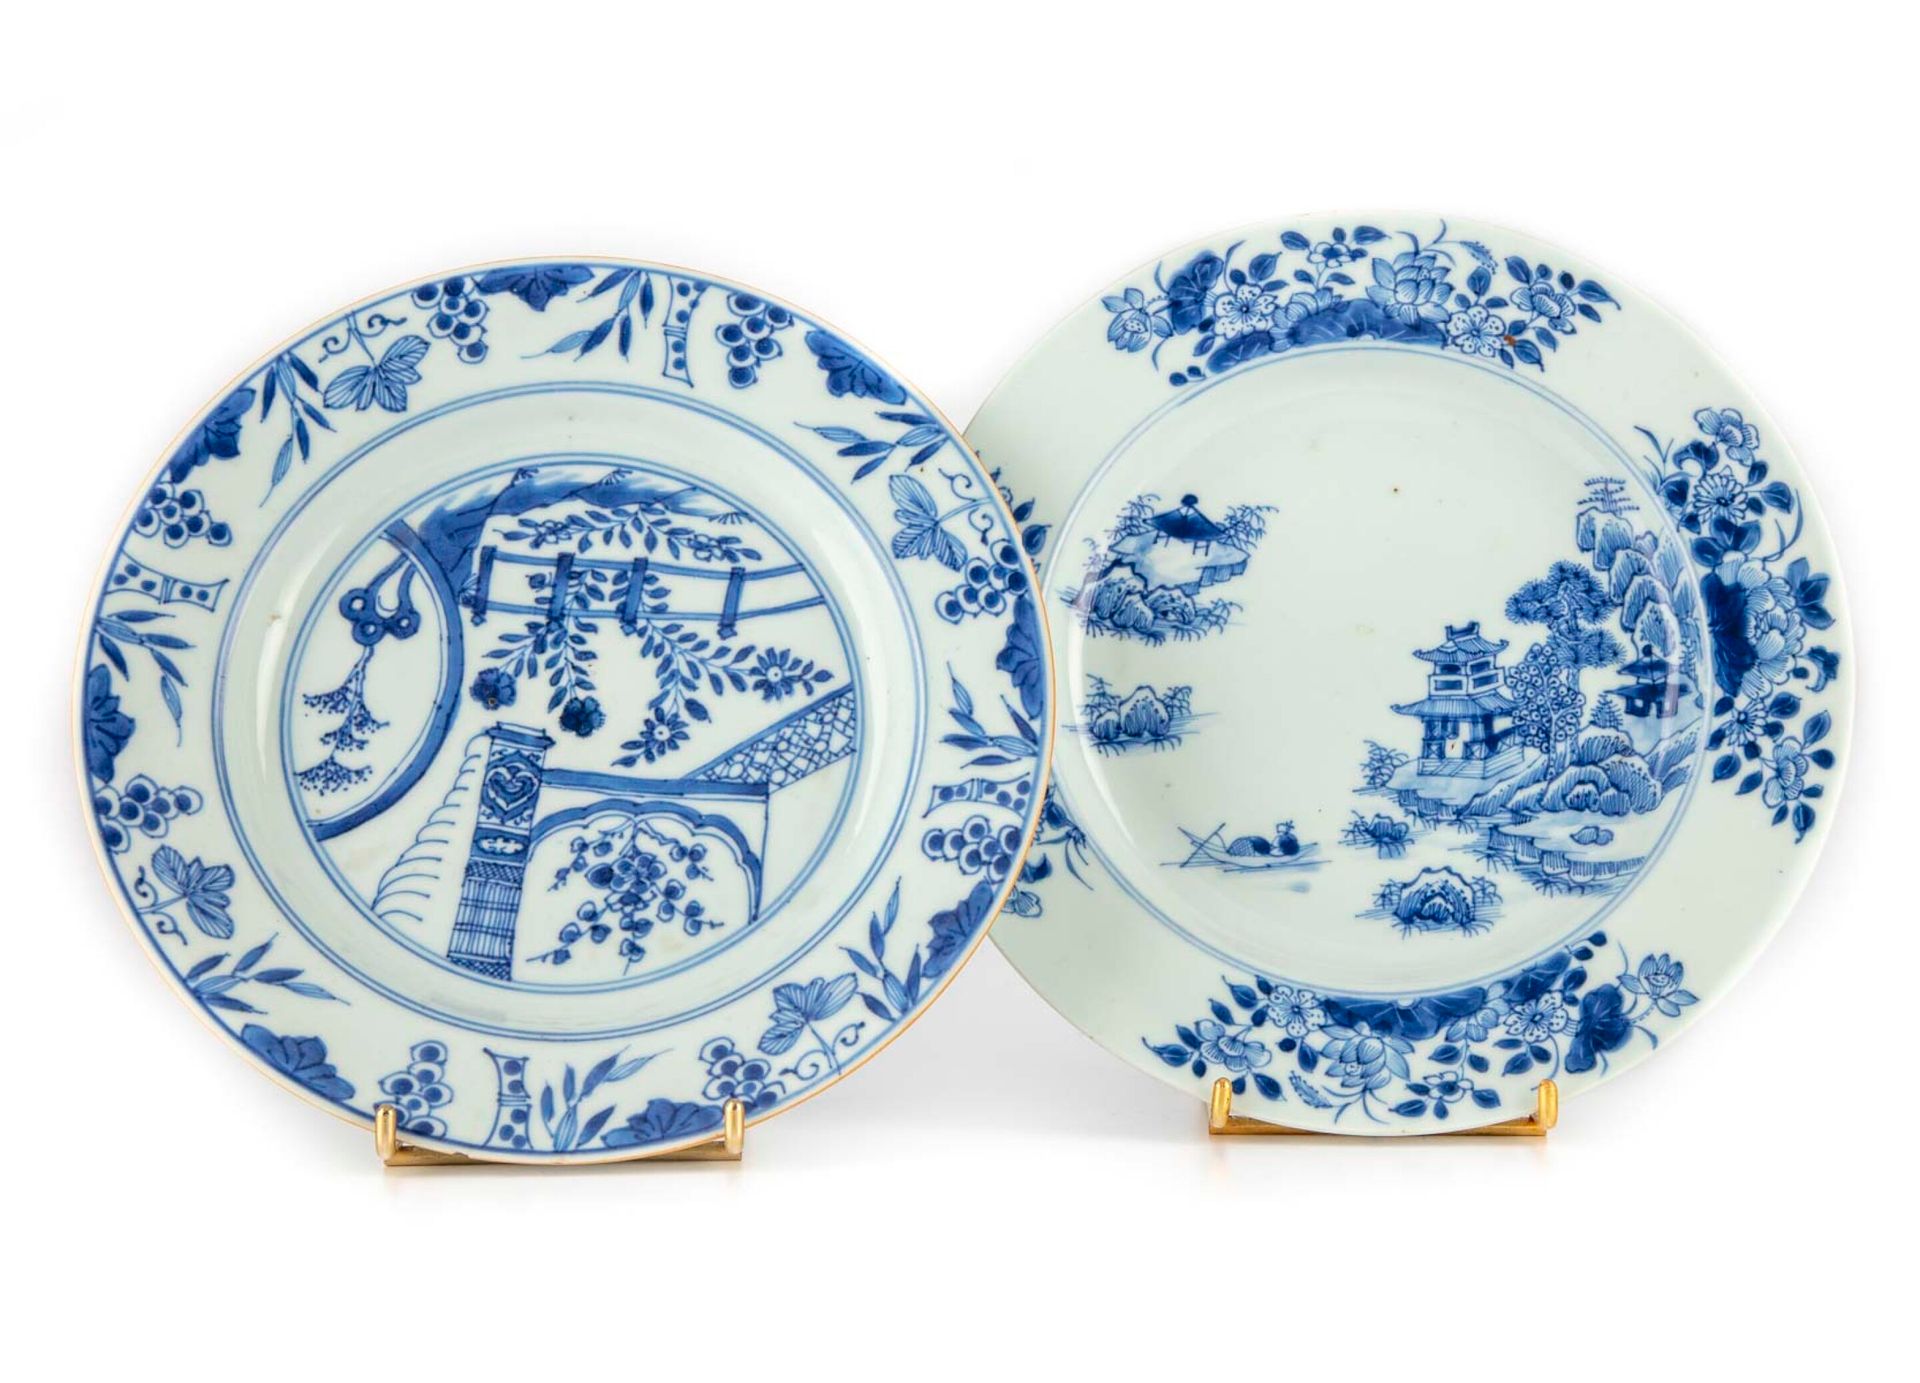 CHINE CHINA 

Zwei Porzellanteller mit blauem monochromen Dekor von Seenlandscha&hellip;